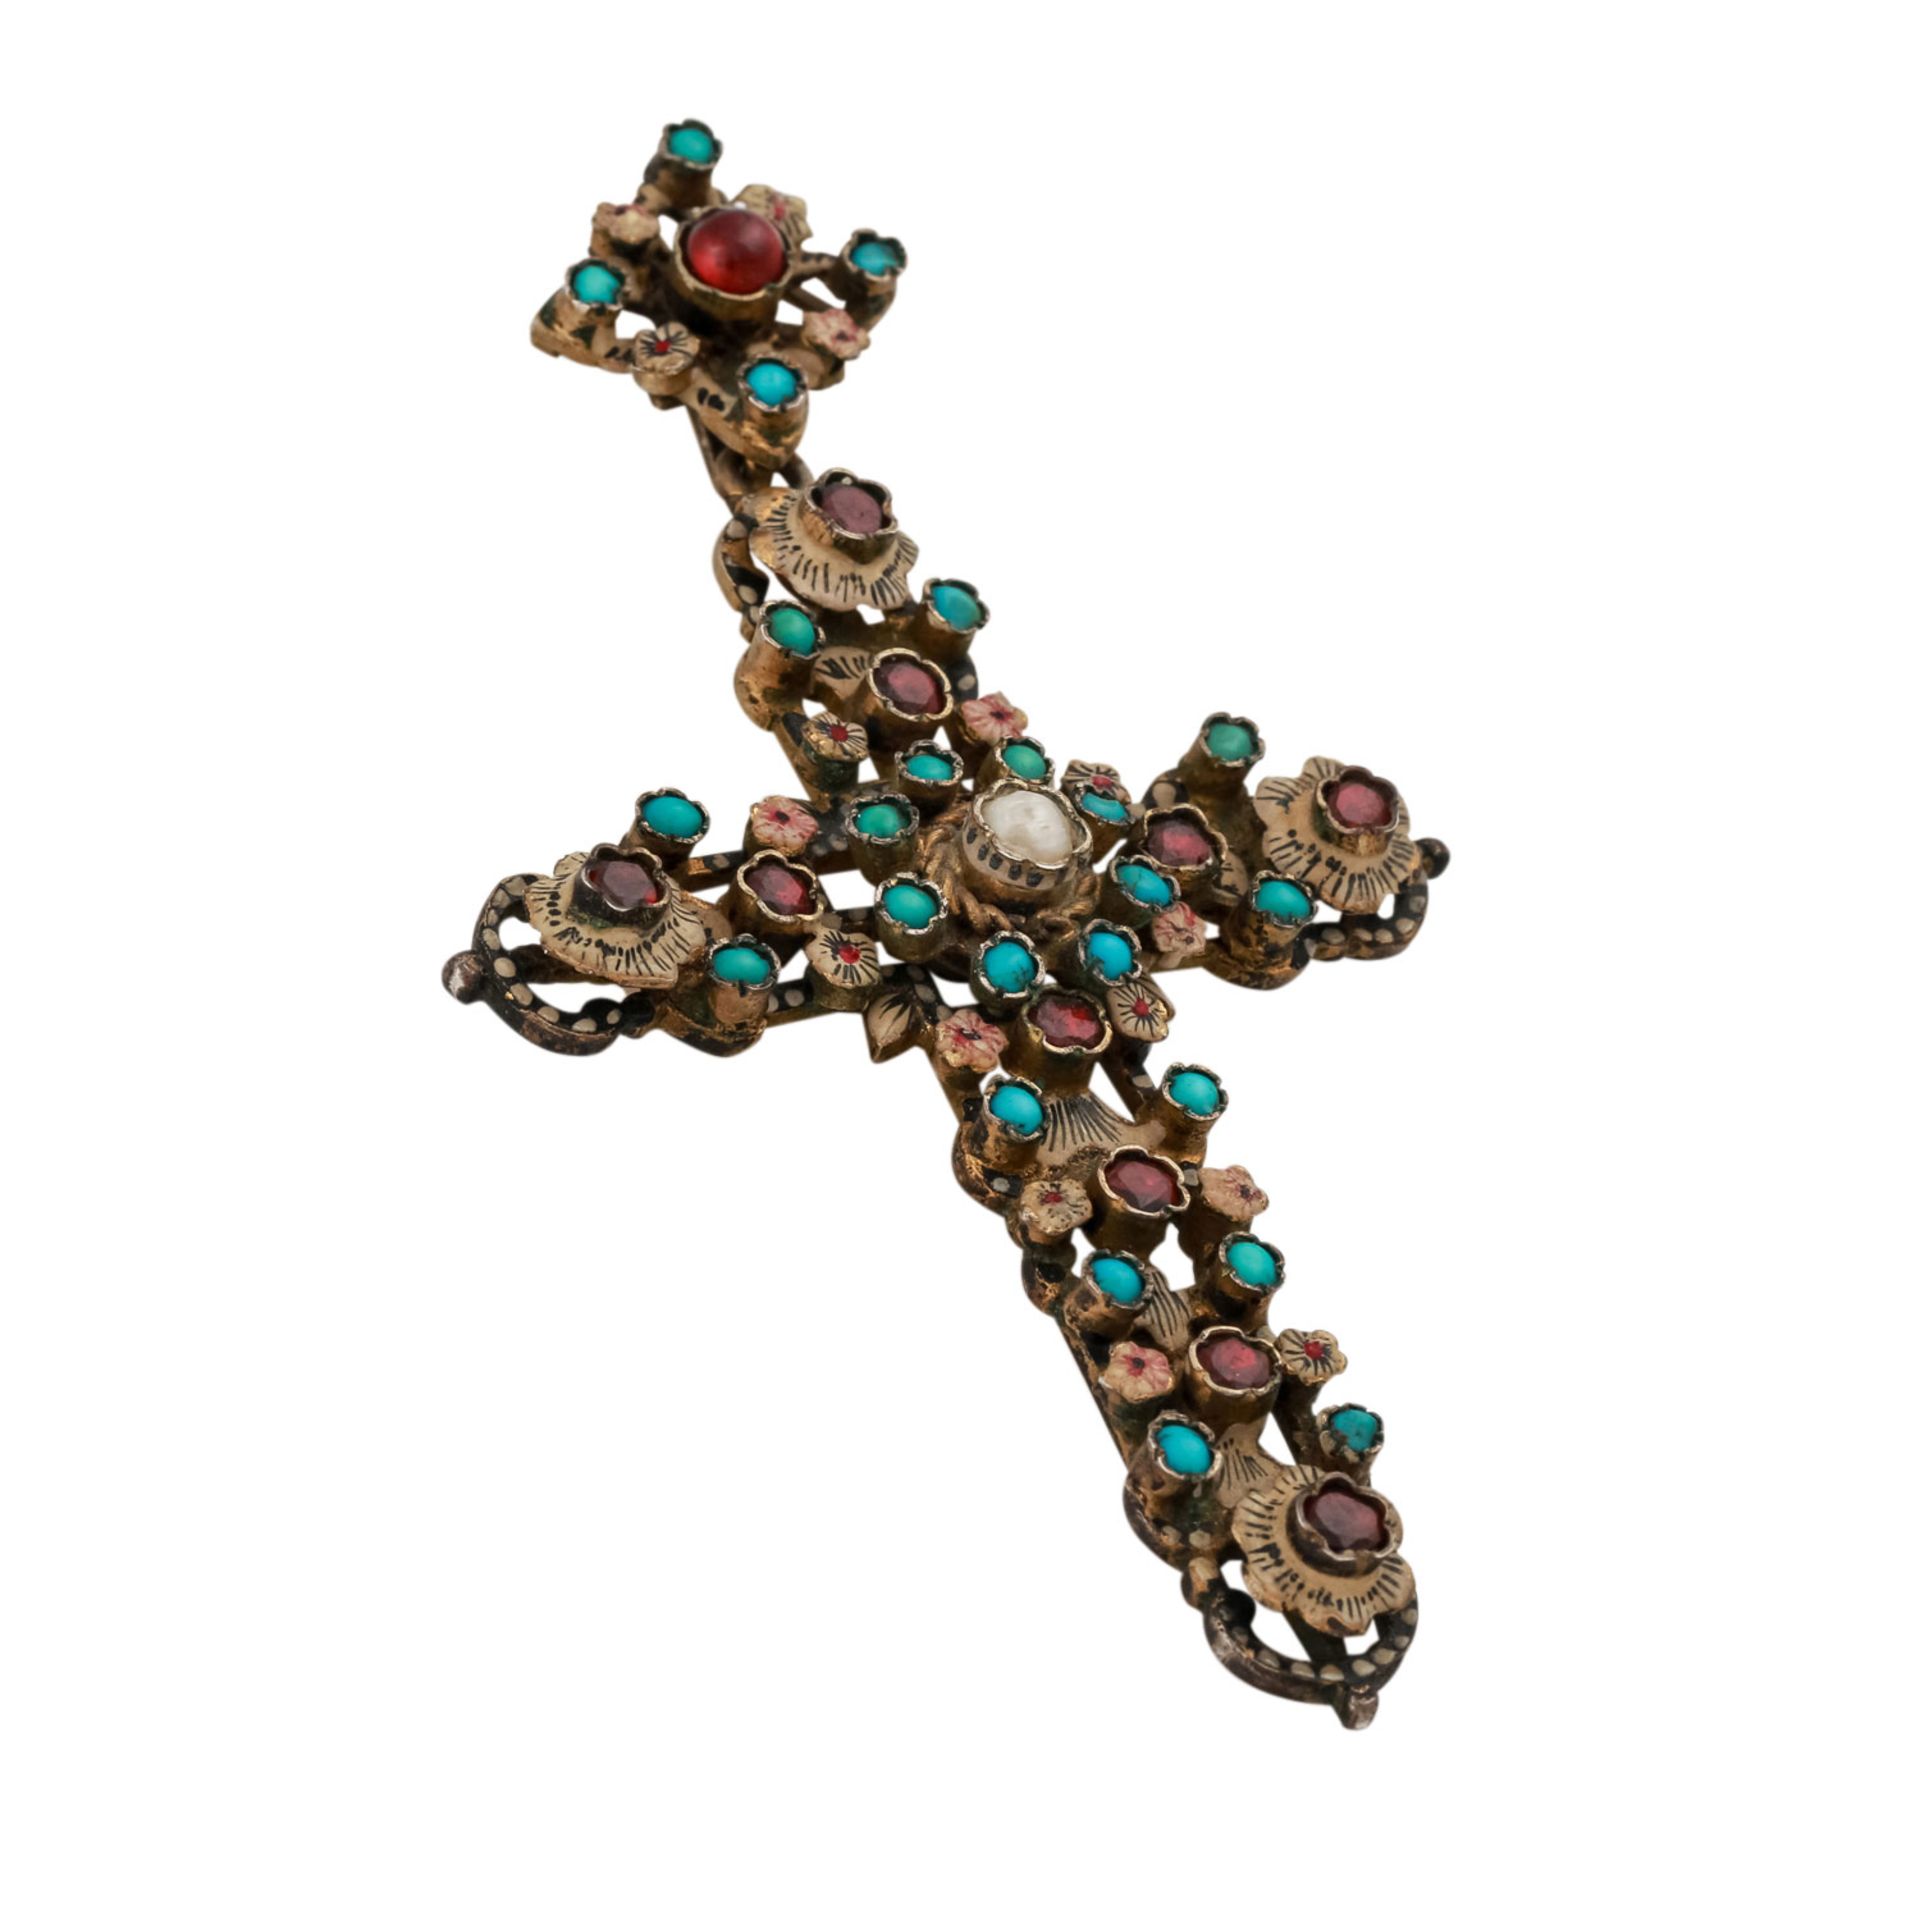 Siebenbürger Kreuz mit Edelsteinen,Granat, Türkis, Silber vergoldet, tlw. emailliert, L: ca. 7,8 cm, - Bild 4 aus 5